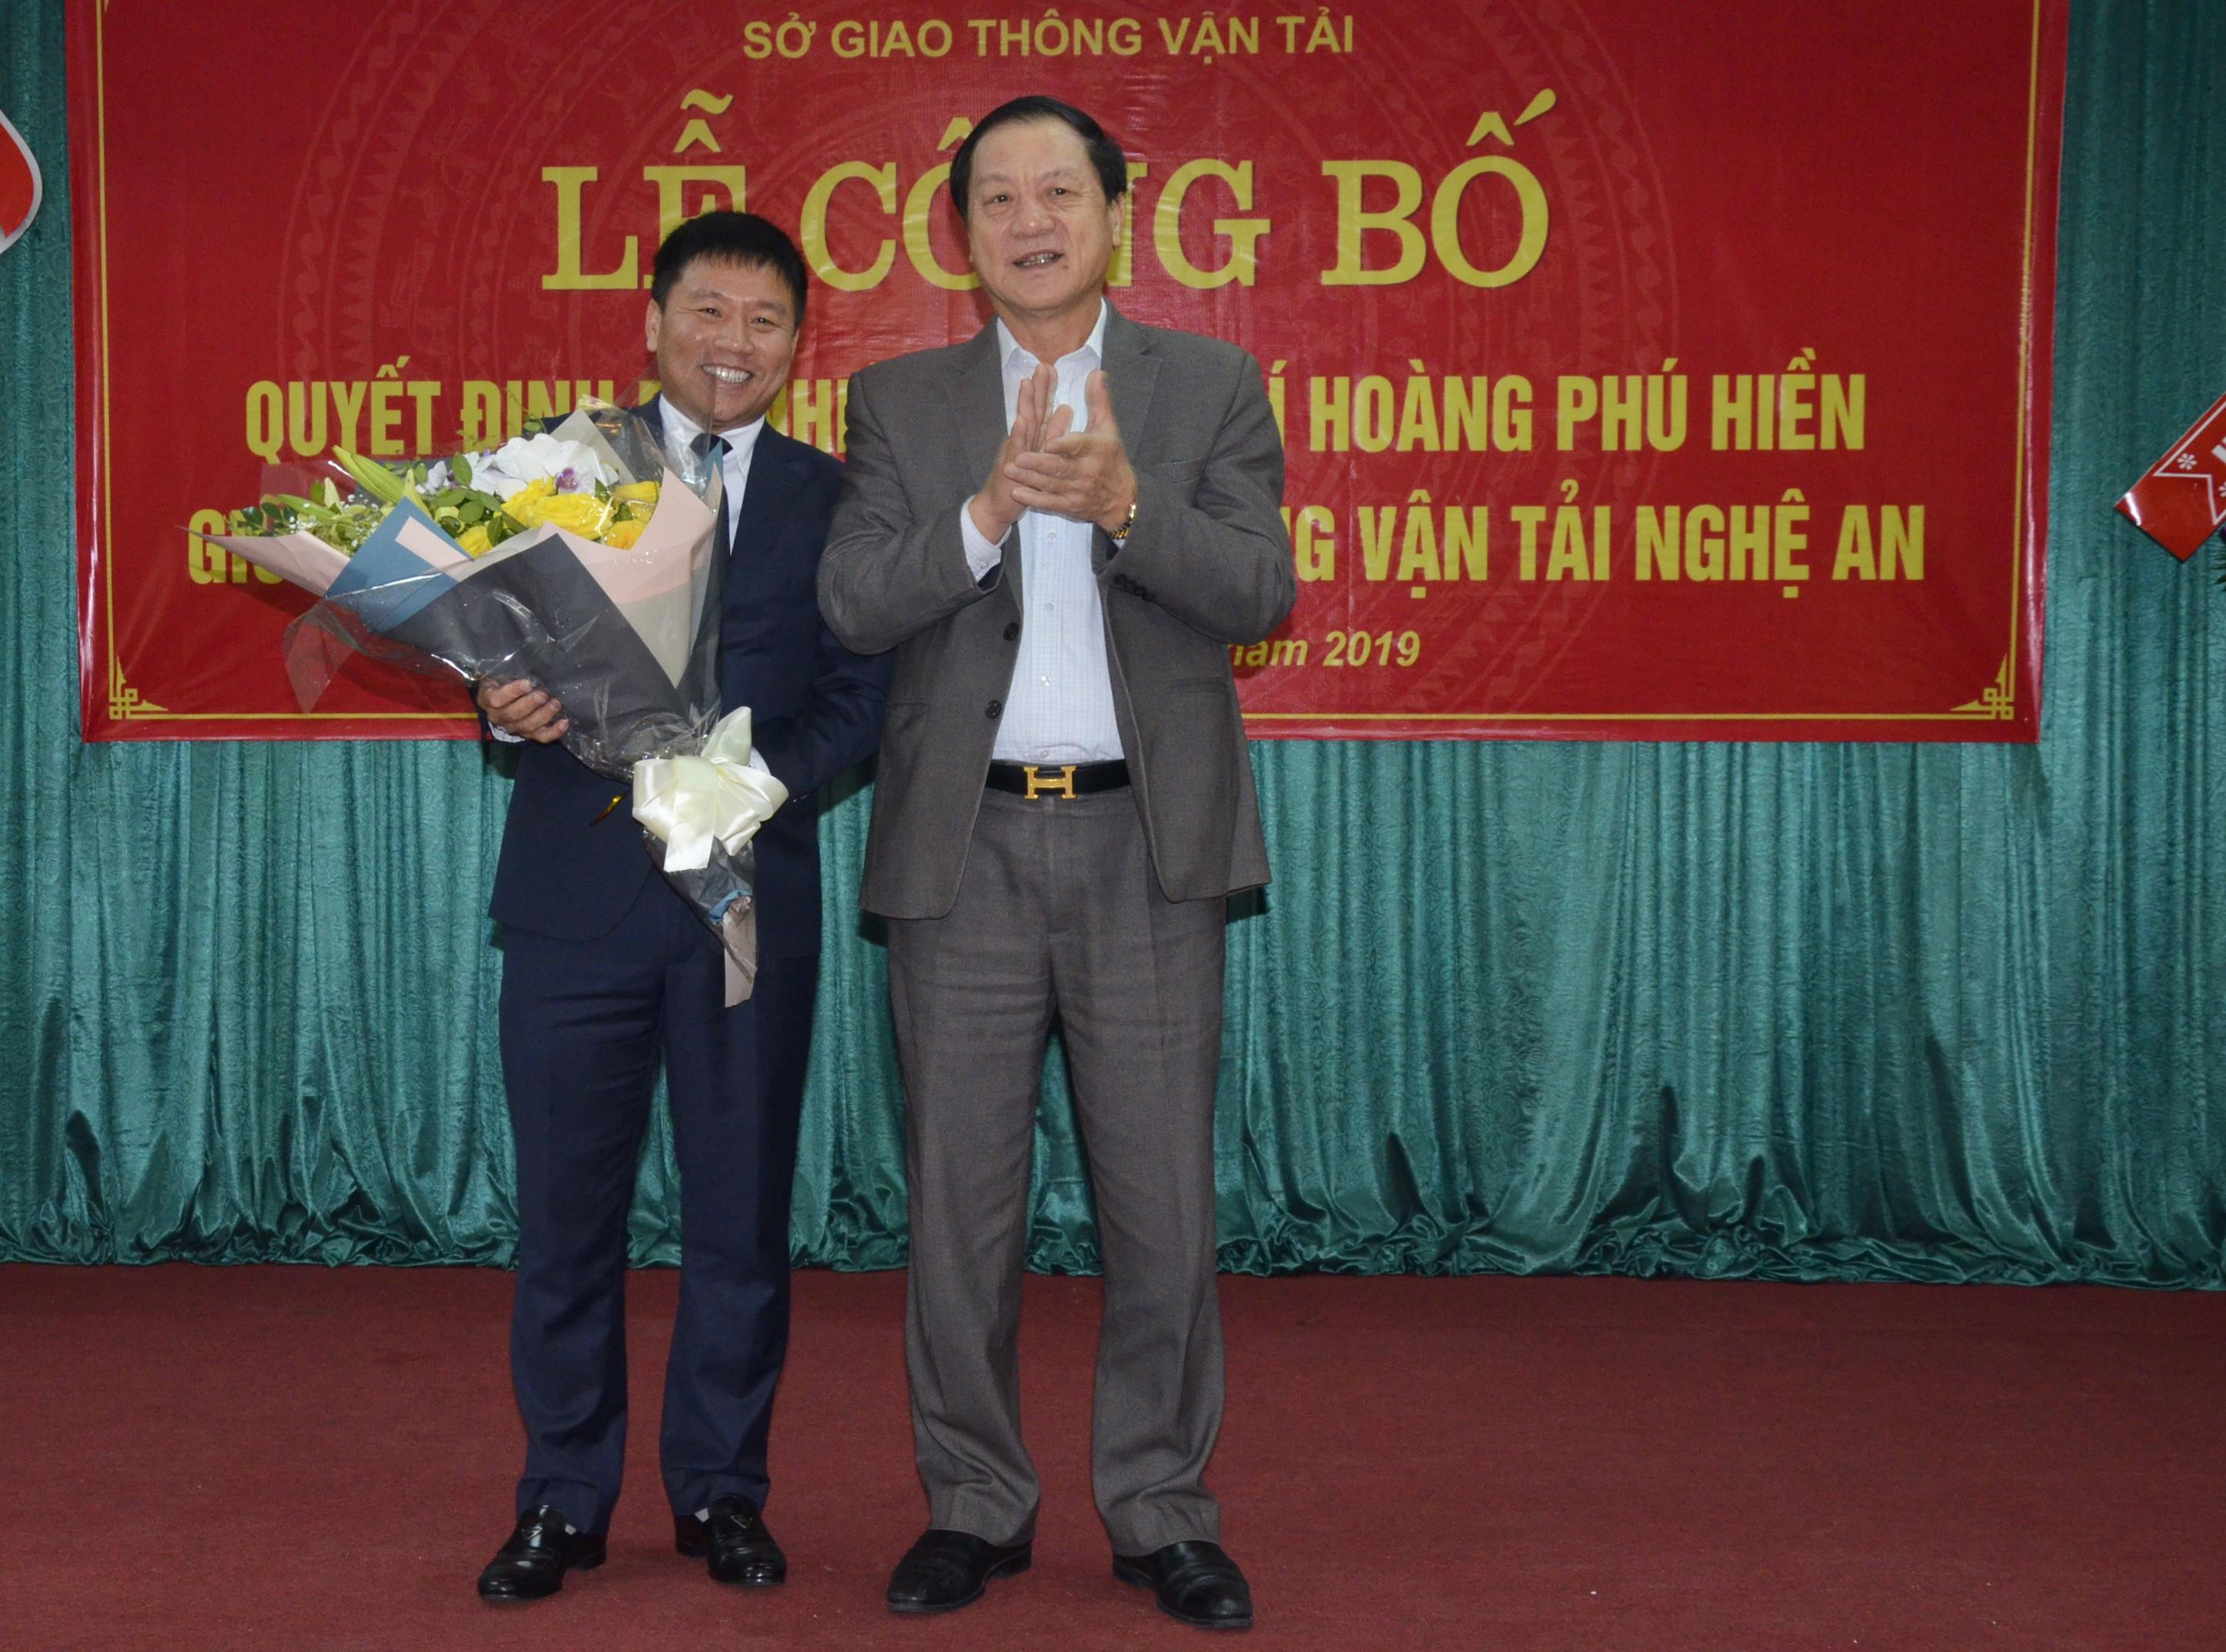 Phó Chủ tịch UBND tỉnh Lê Minh Thông chúc mừng đồng chí Hoàng Phú Hiền. Ảnh: Thanh Lê 